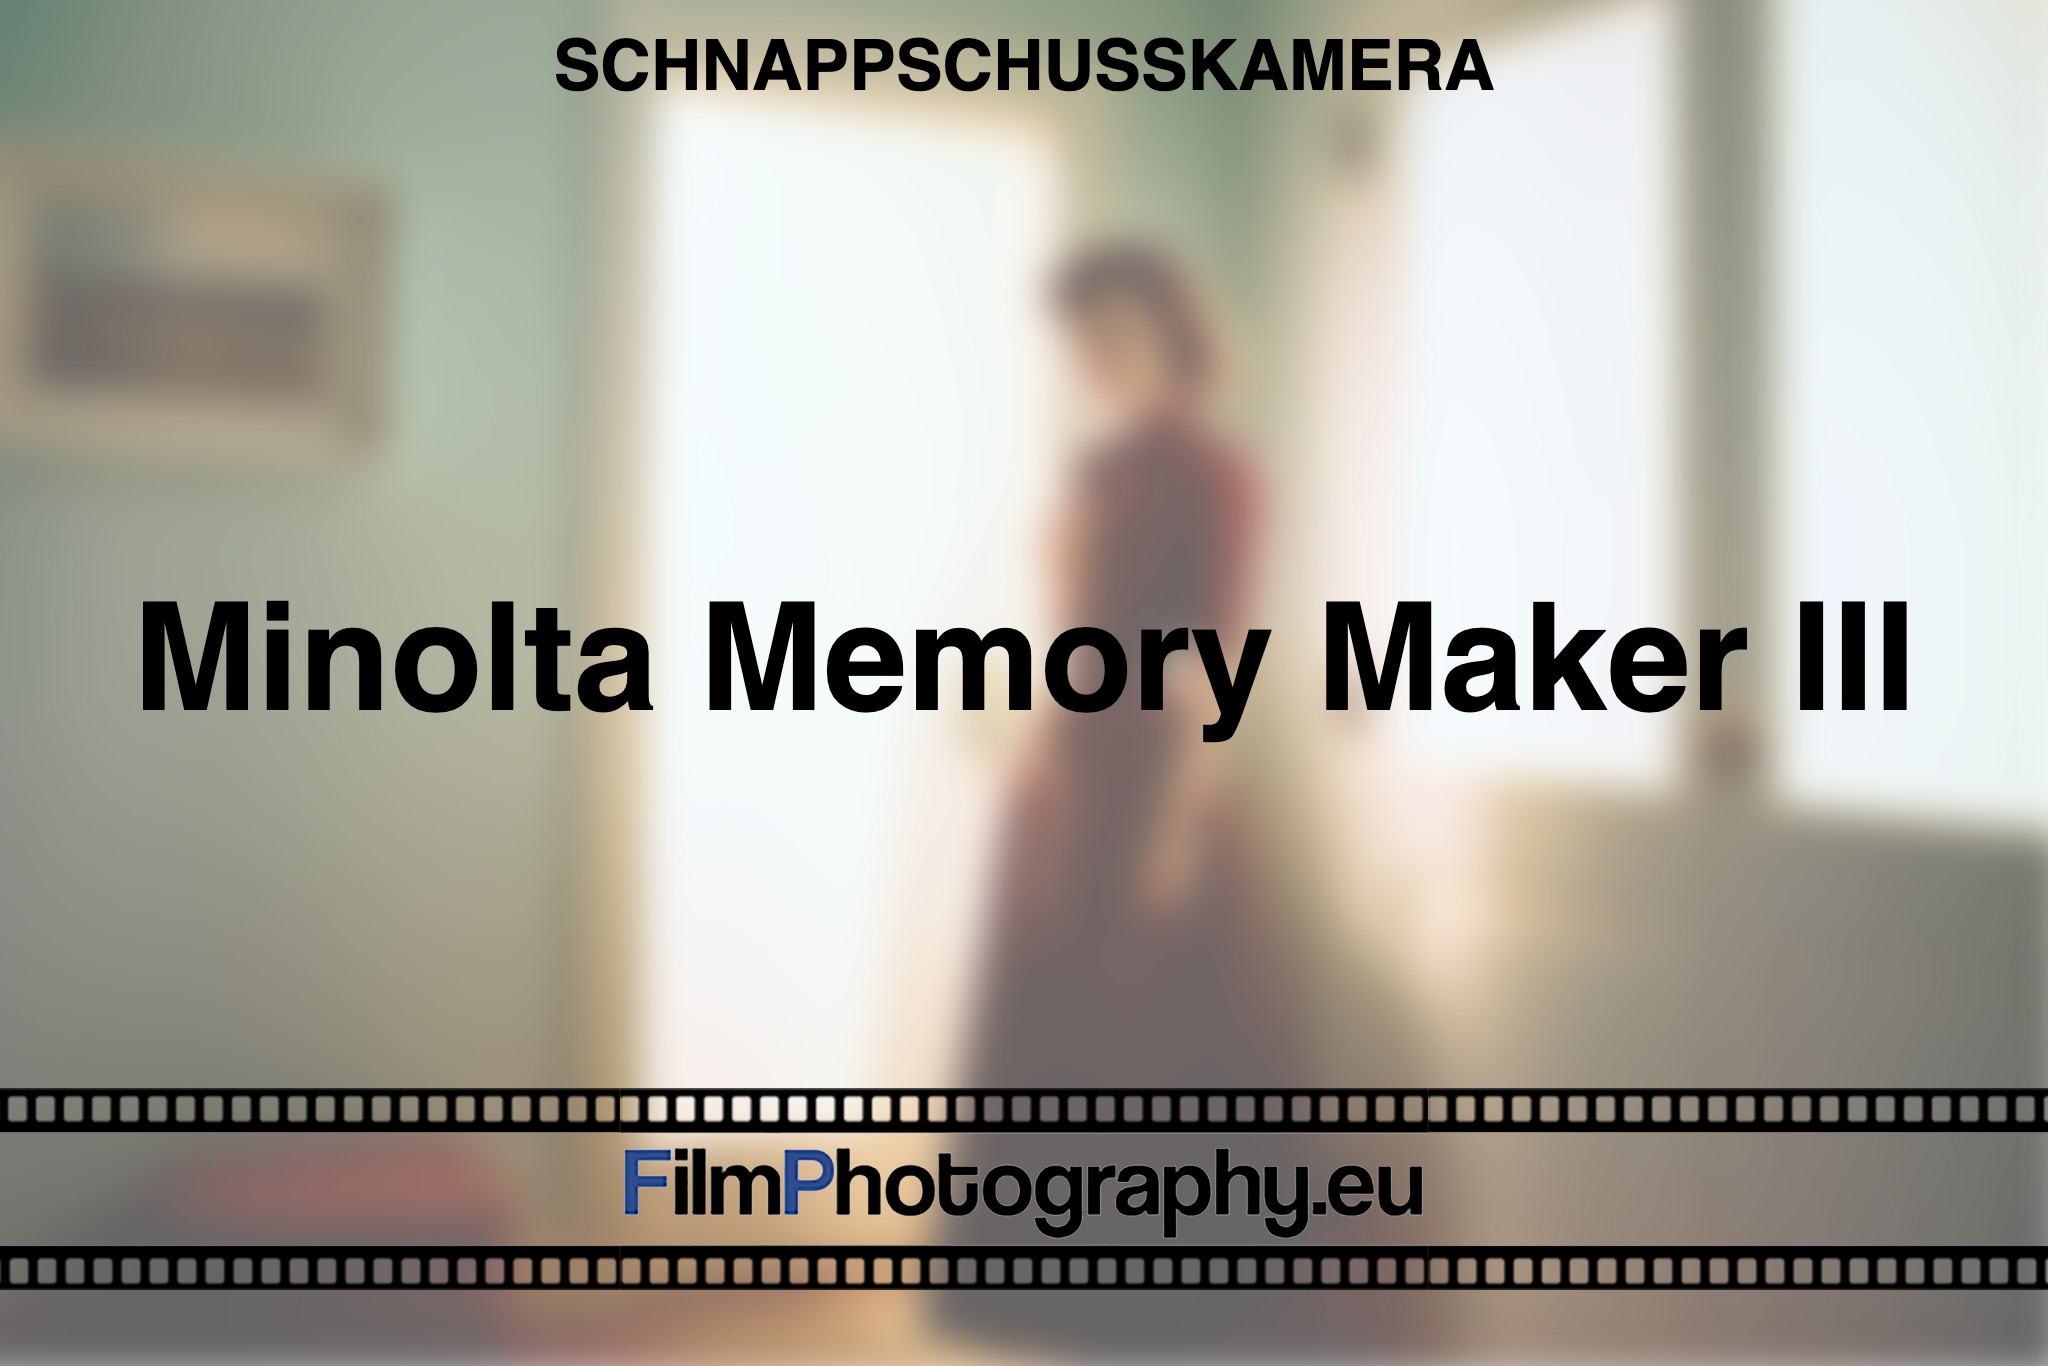 minolta-memory-maker-iii-schnappschusskamera-bnv